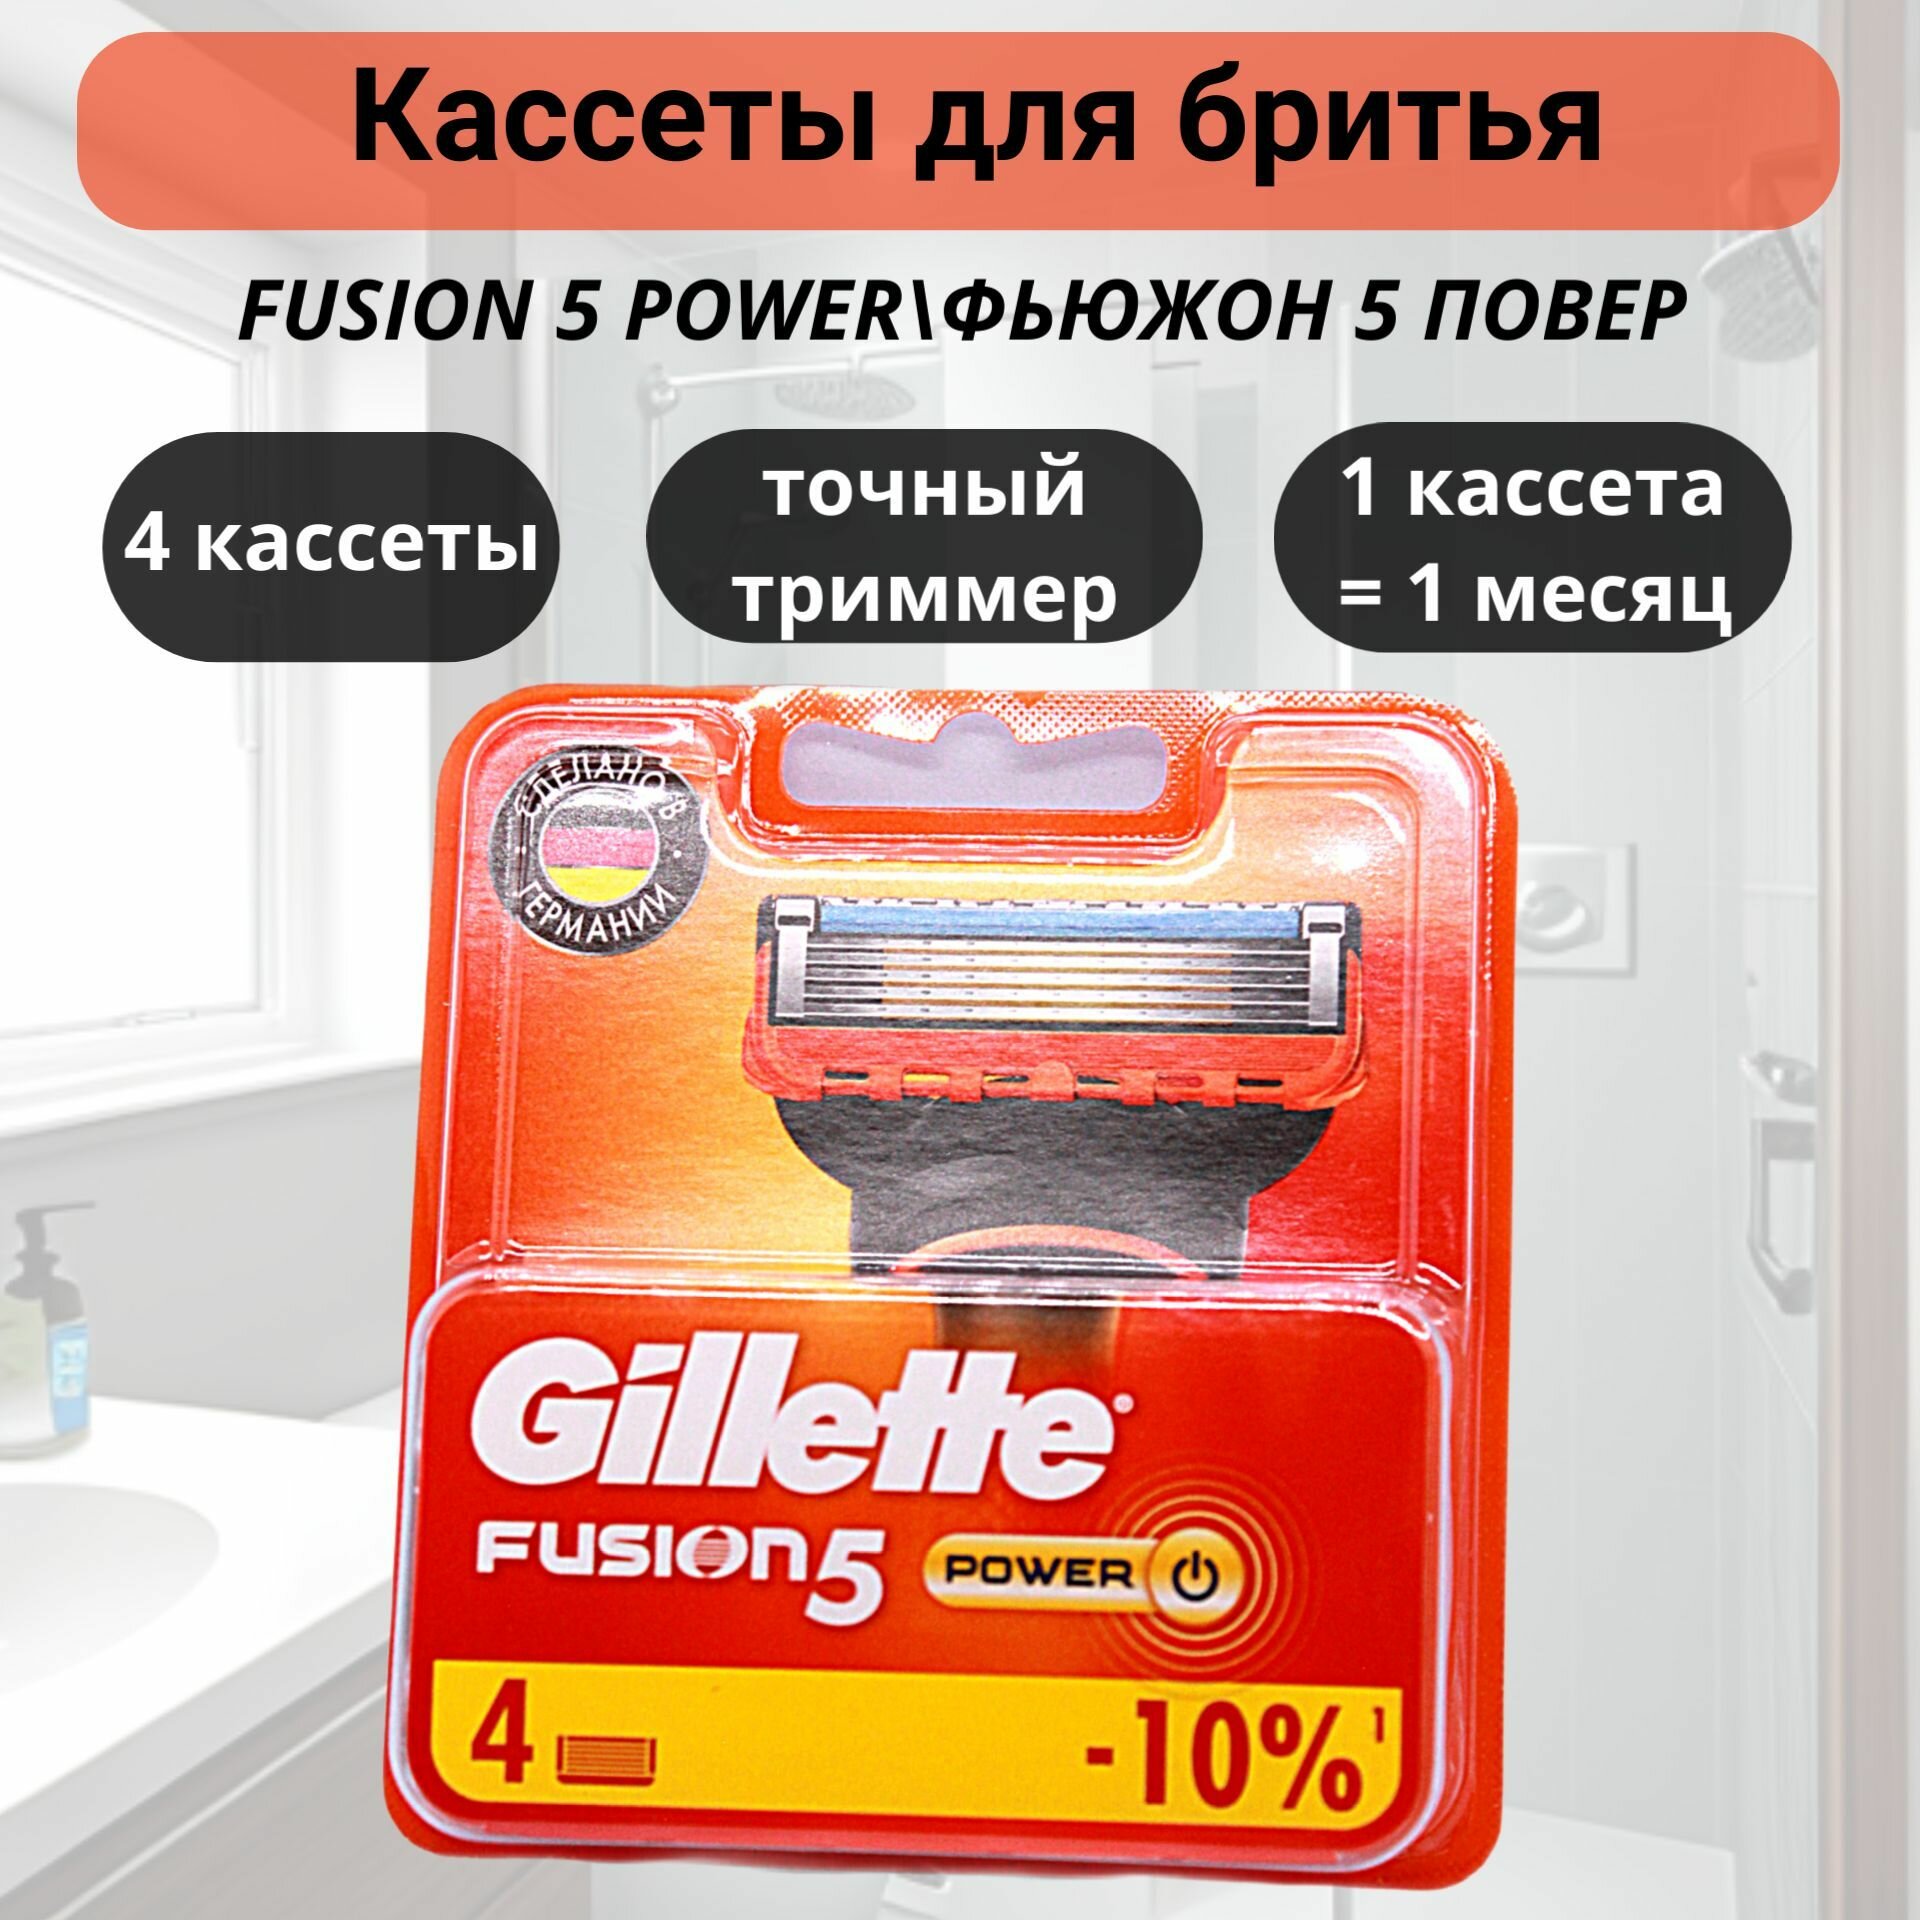 Сменные картриджи для бритья Gillette Fusion Power, 4 шт. - фото №10